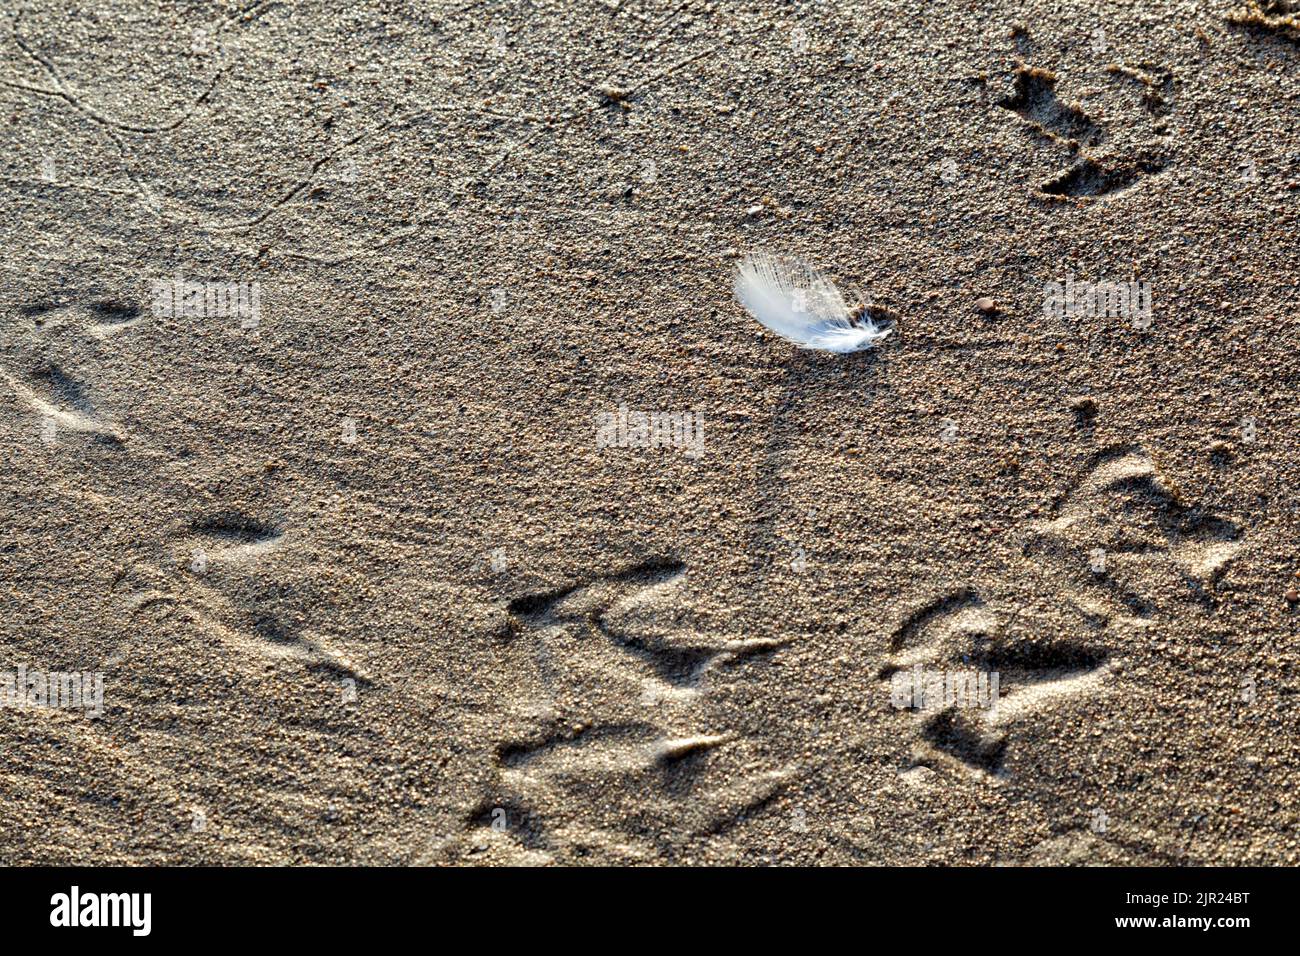 Une plume blanche vue dans la lumière du matin sur une plage de sable grossier entourée de traces de pieds mouettes et de traces de ver de sable Banque D'Images